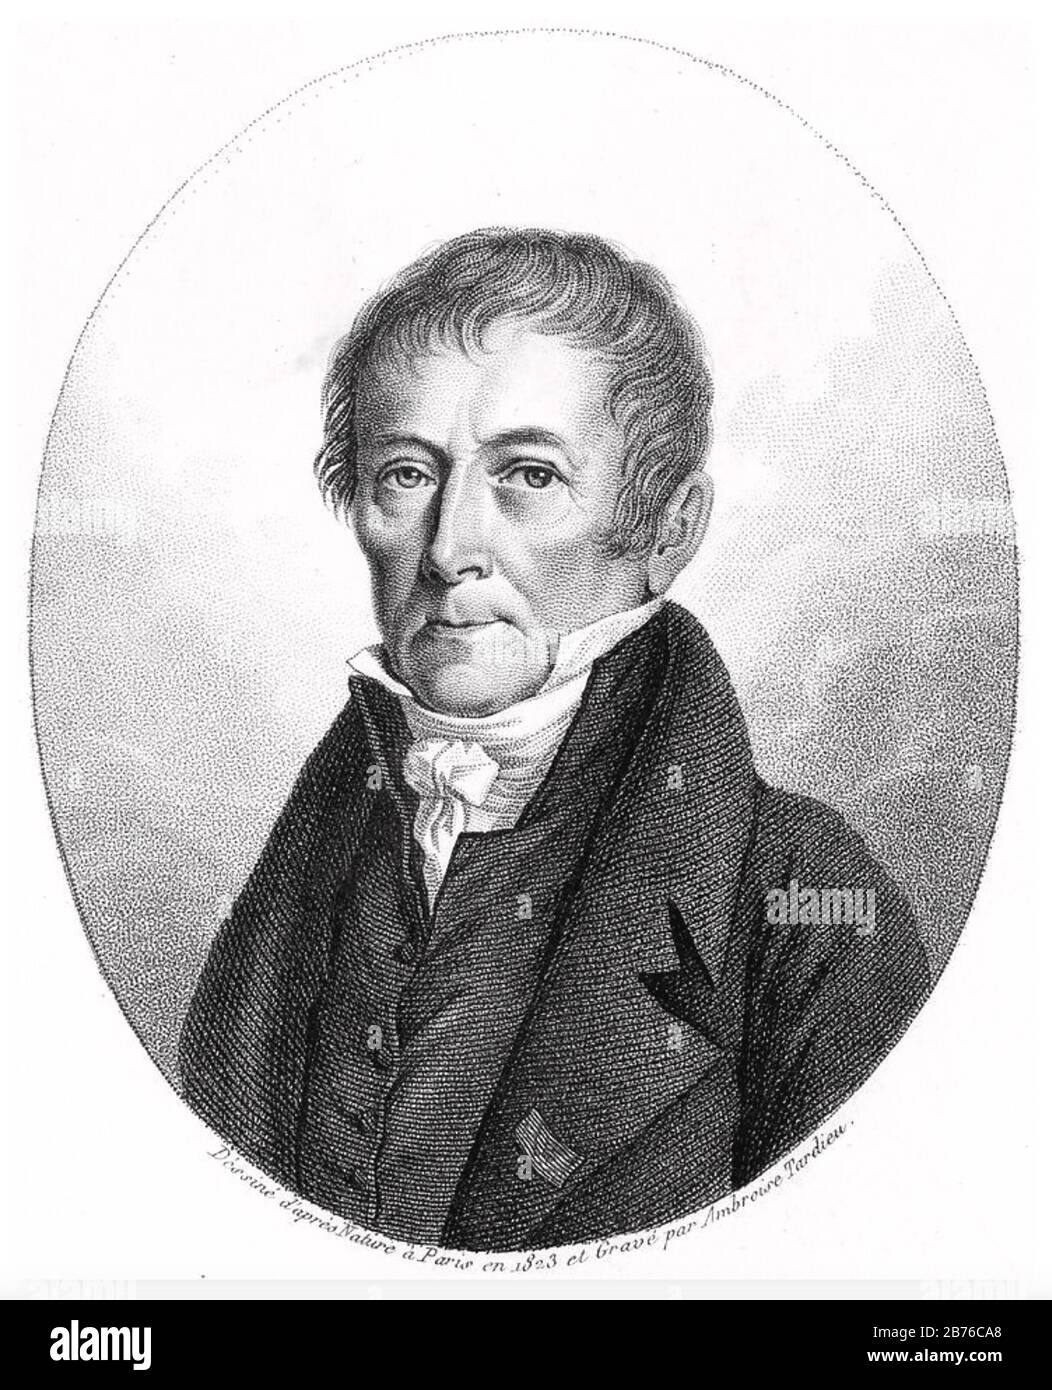 LOUIS CARBONNIERES (1755-1827) politicien, géologue et botaniste français Banque D'Images